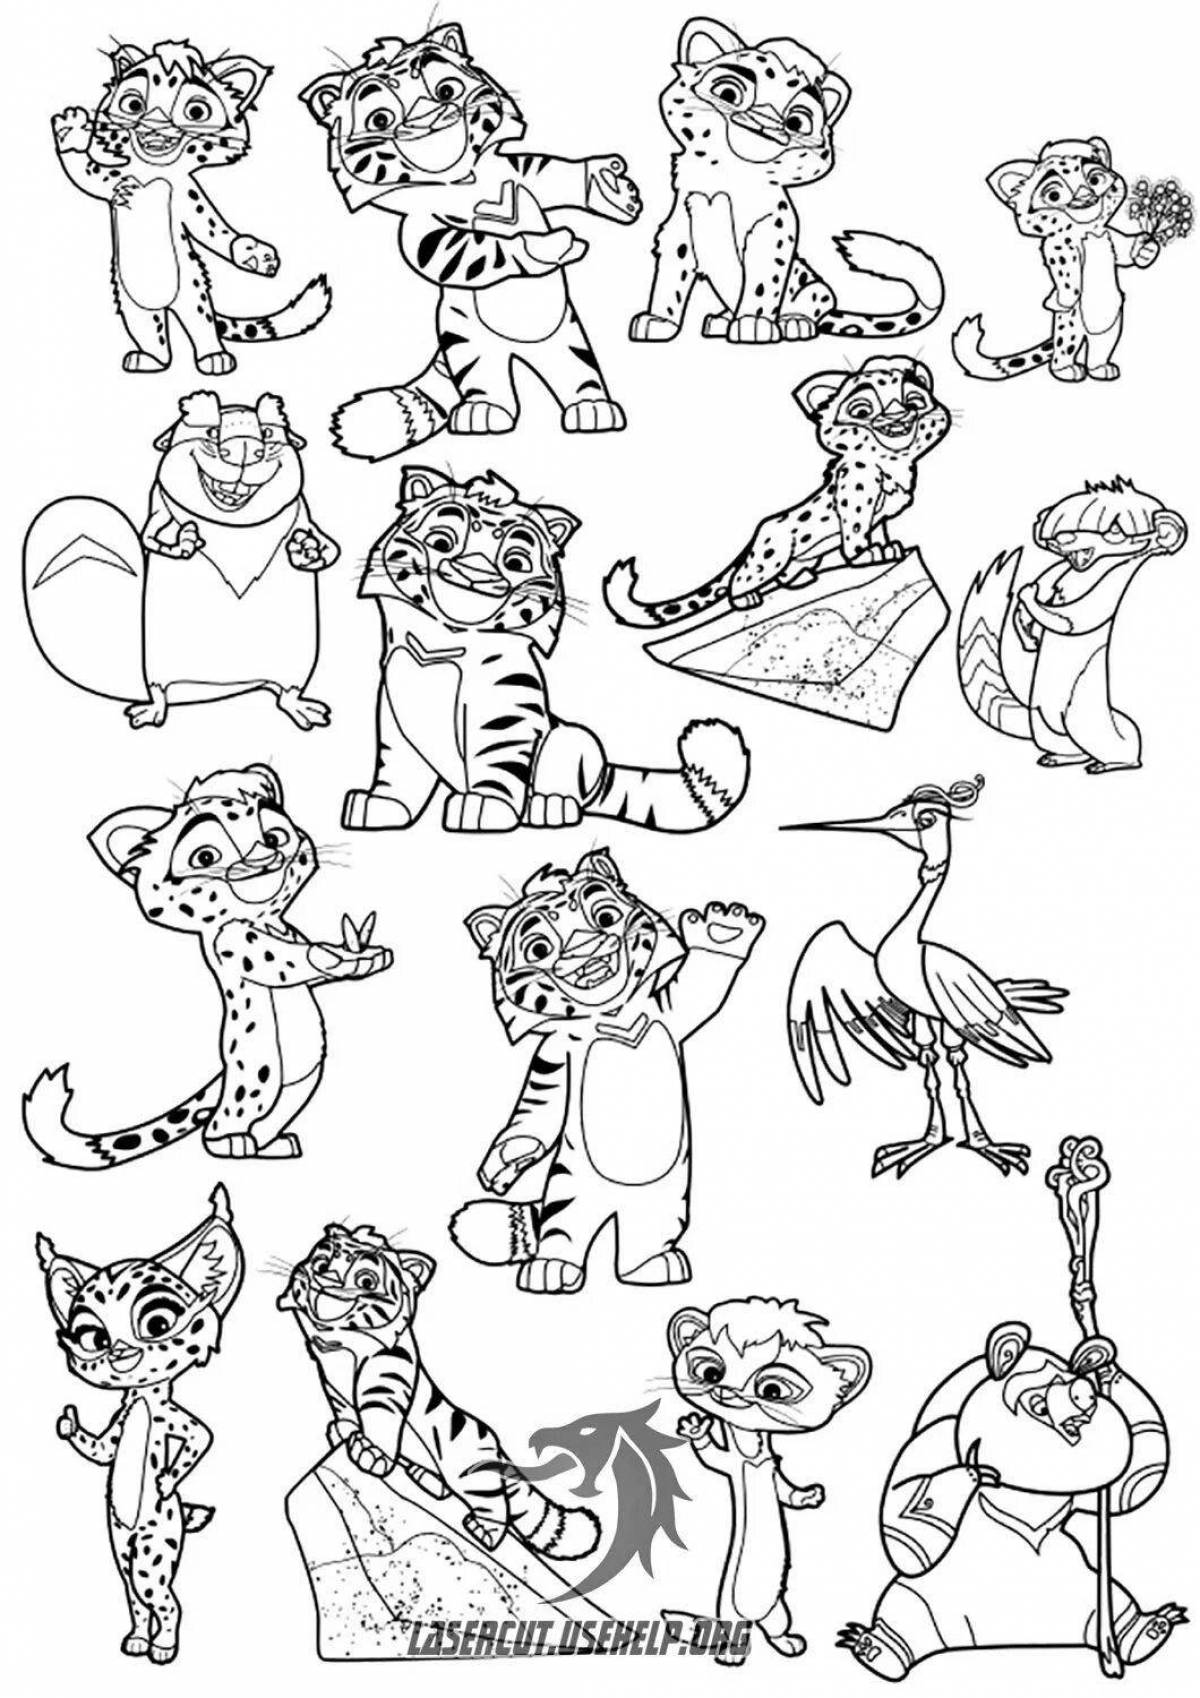 Brilliant tiger coloring page